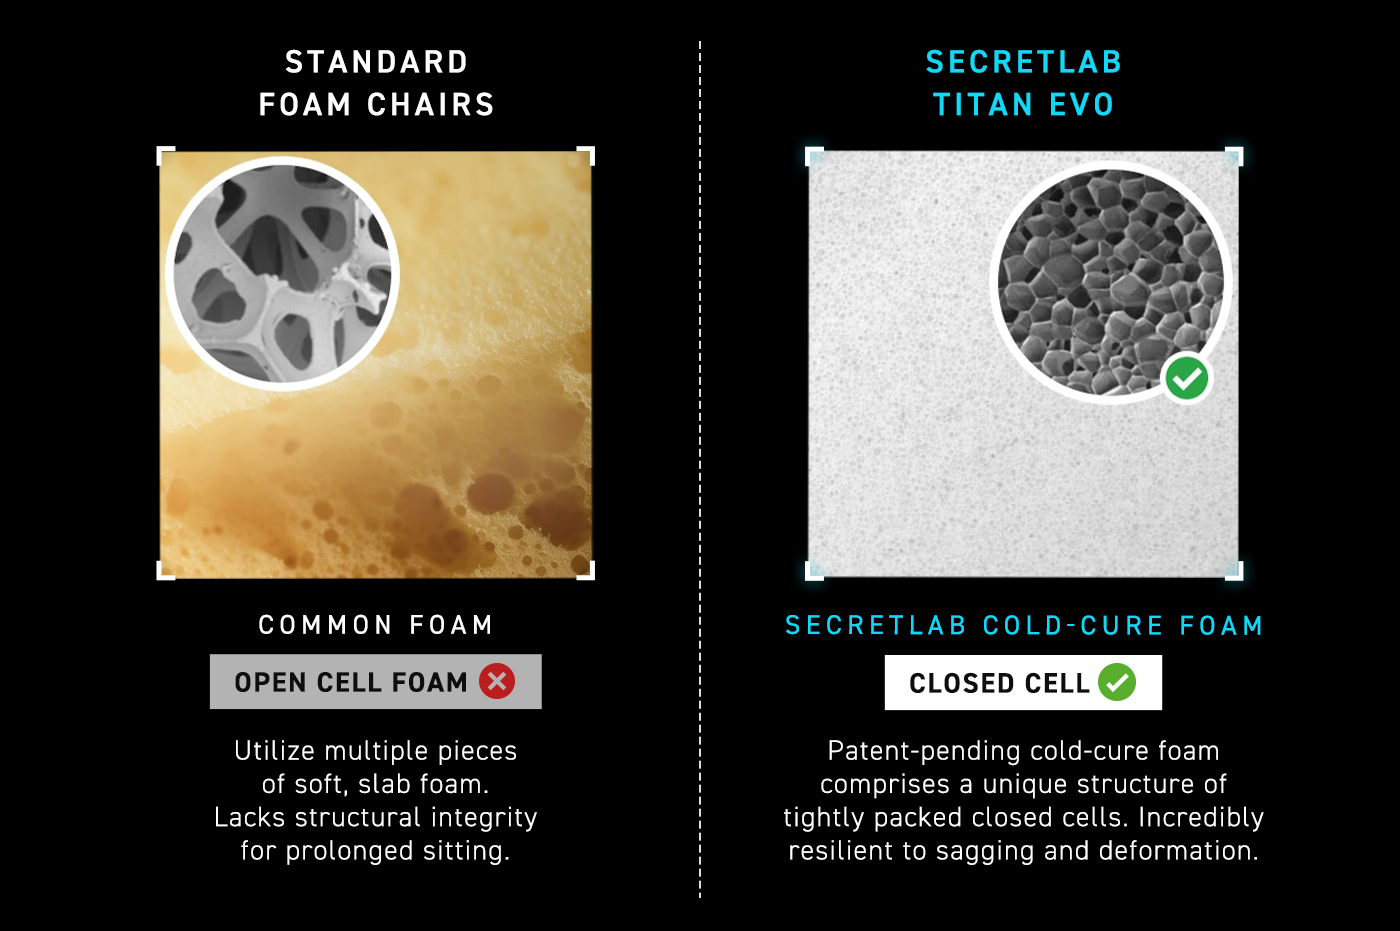 Secretlab cold-cure foam vs open cell foam